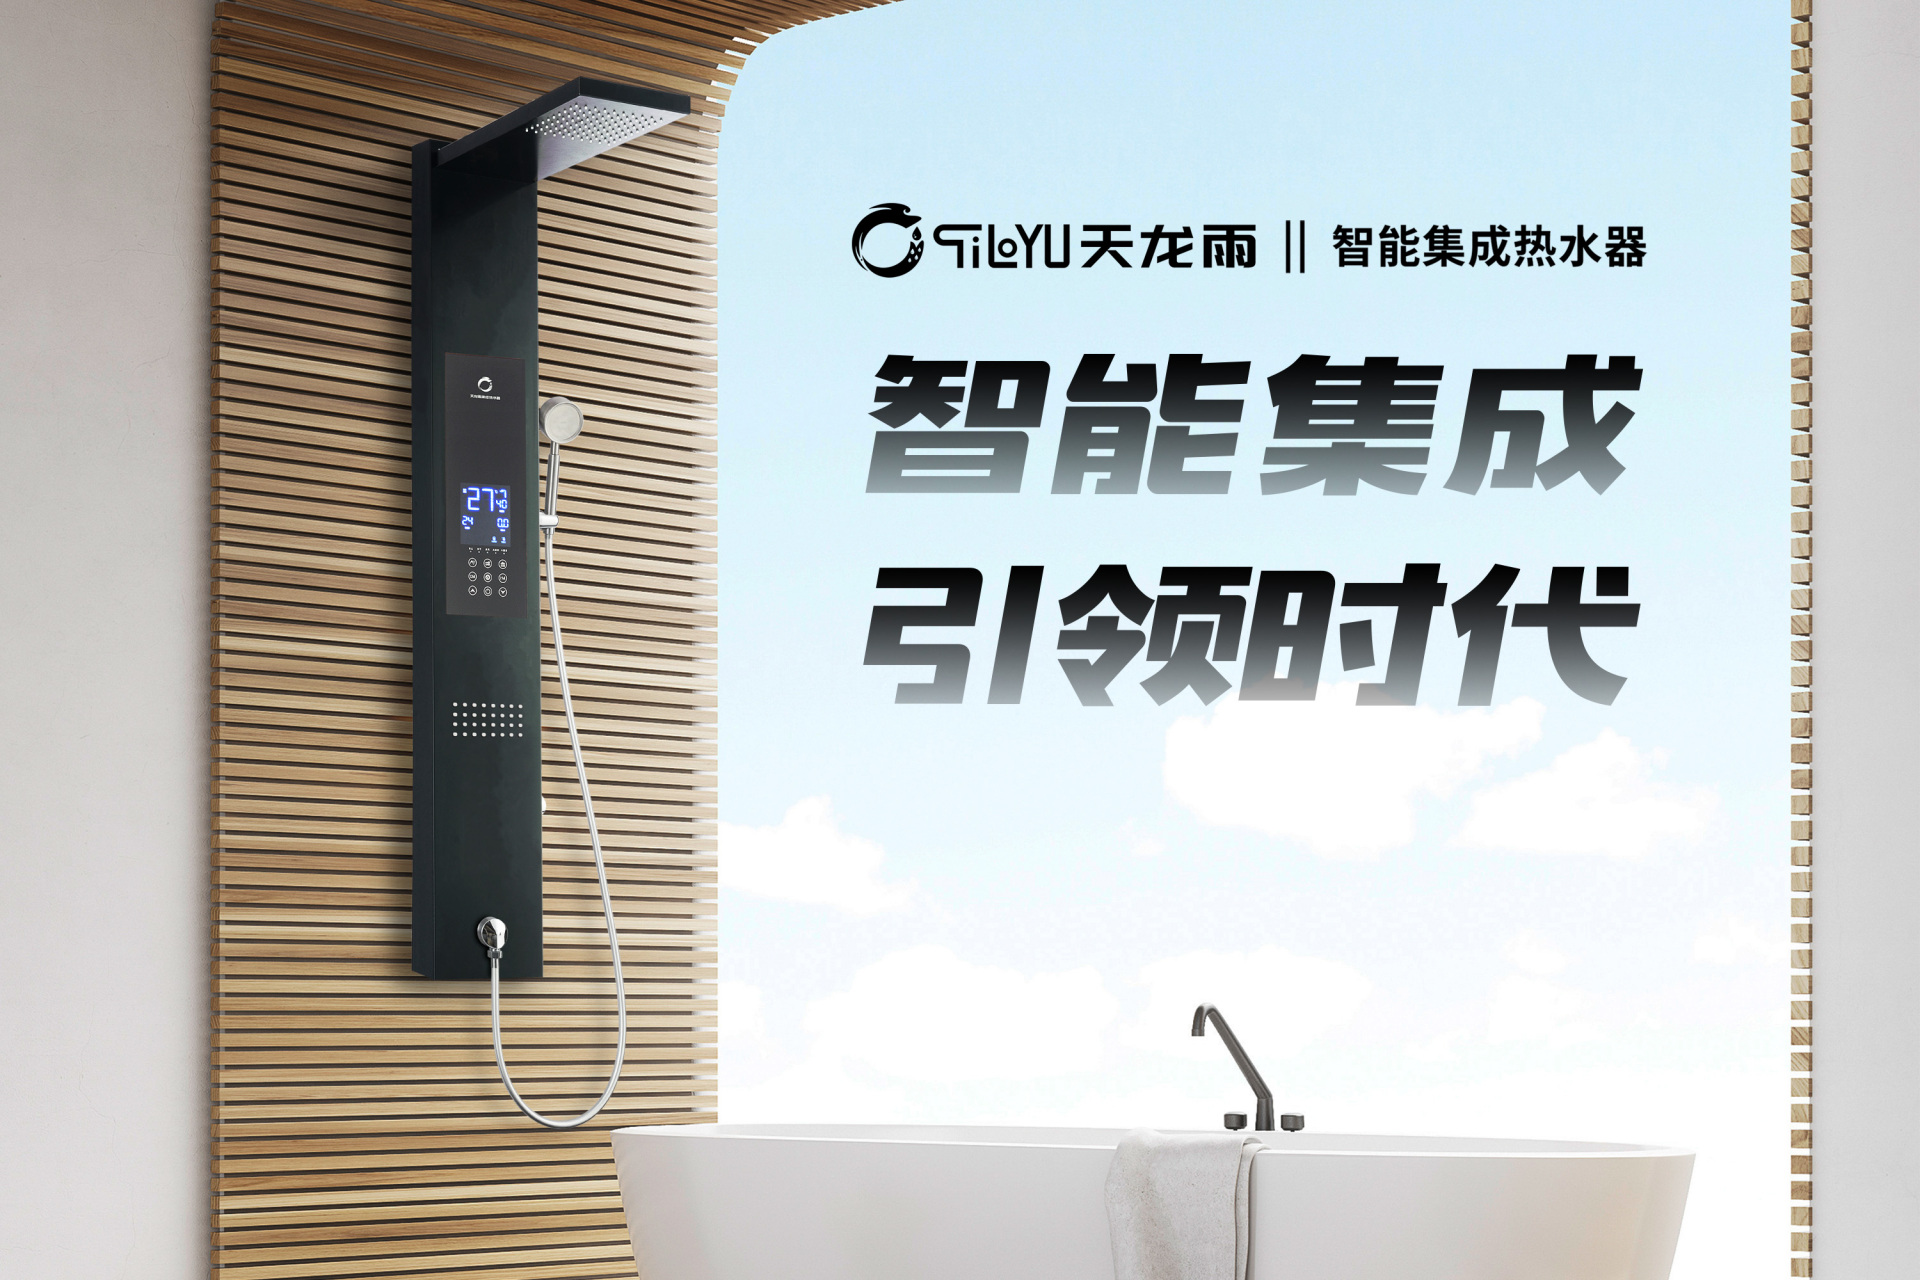 天龙雨(tiloyu)集成热水器家用即热式全自动智能恒温节能淋浴洗澡集成